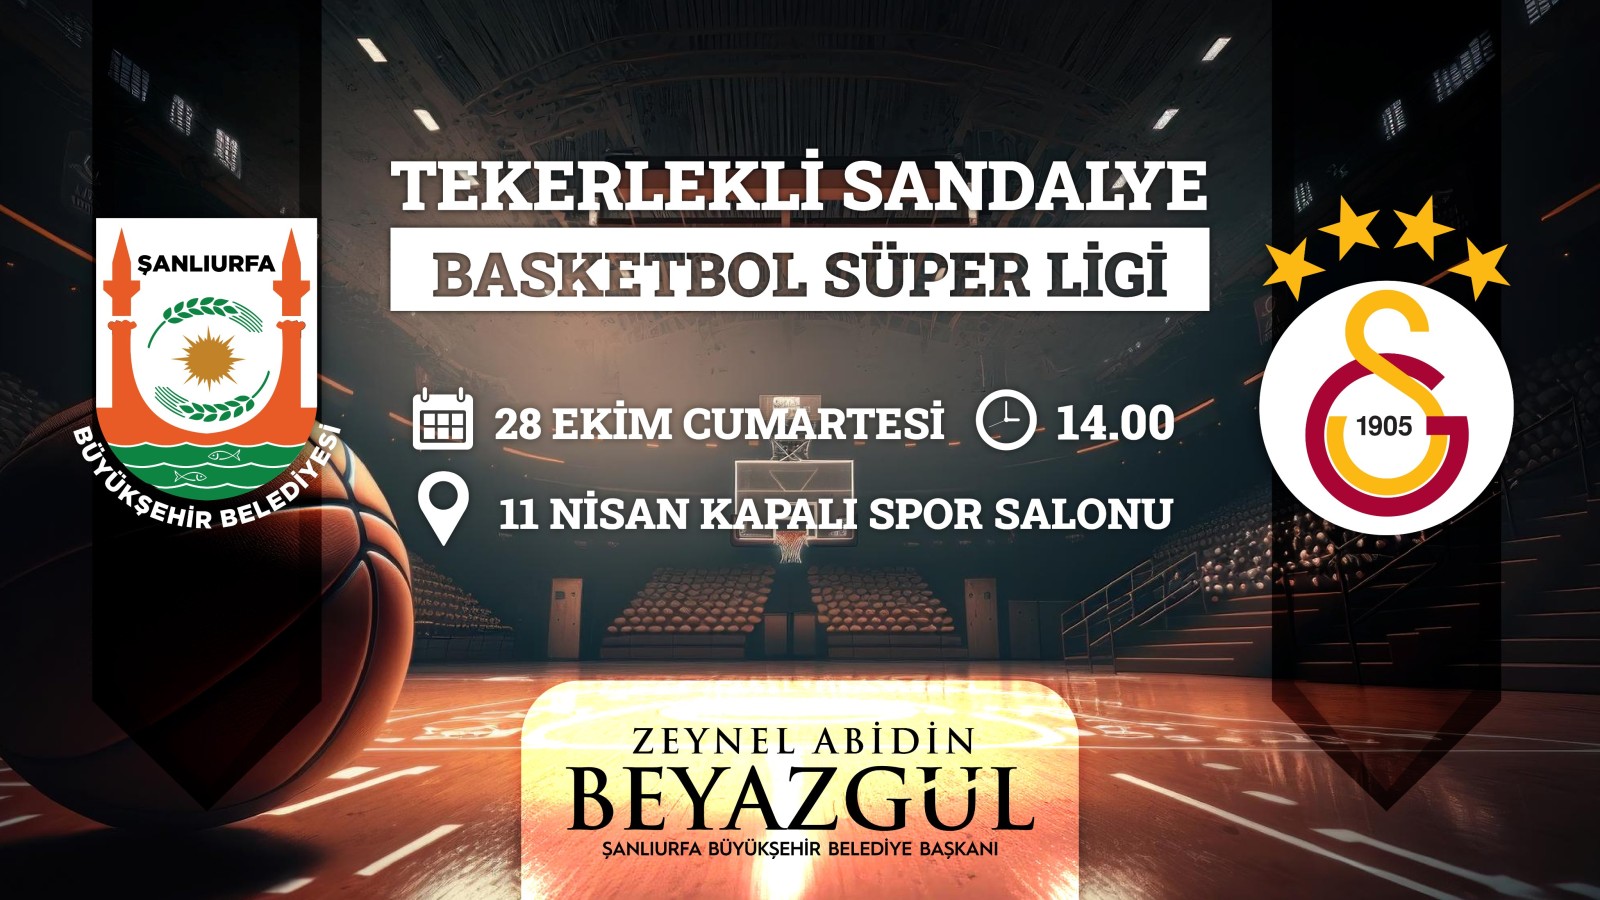 Şanlıurfa Tekerlekli sandalye Basketbol takımı Galatasaray’ı konuk ediyor